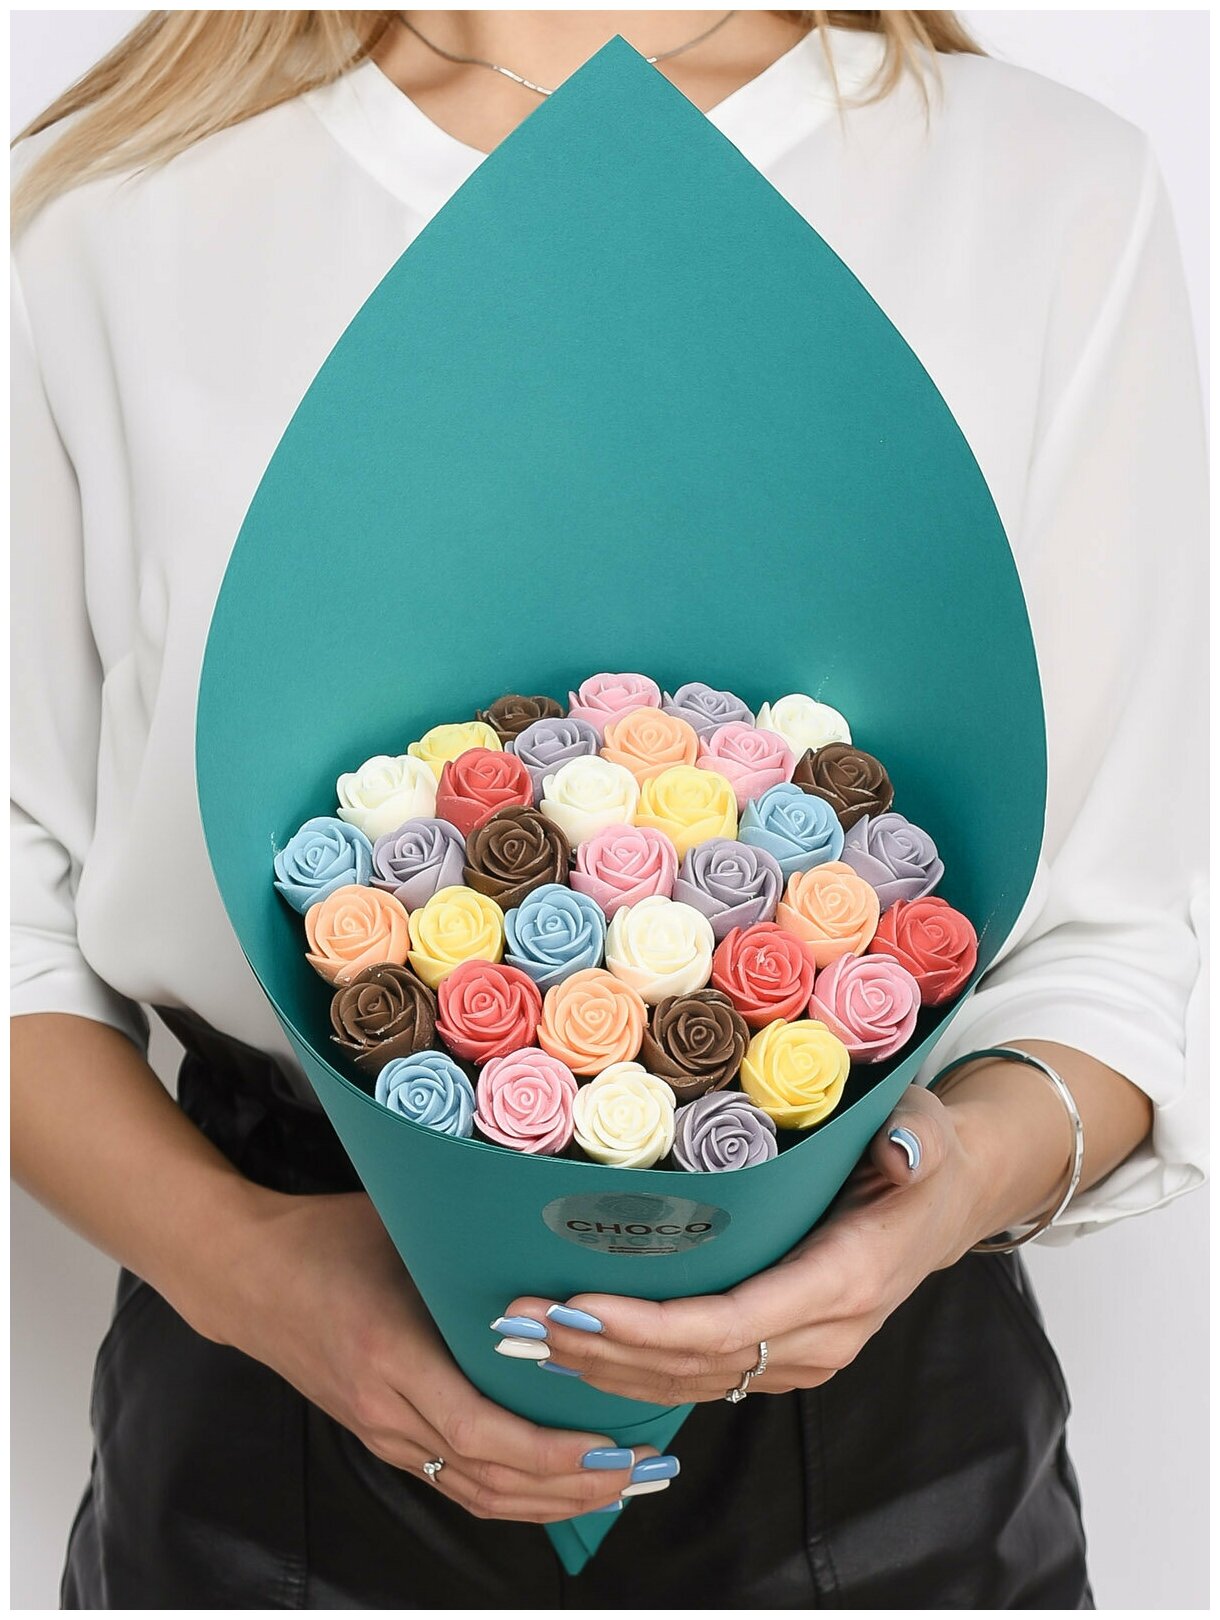 Подарок к пасхе букет шоколадных роз 37 шт. CHOCO STORY - сладкие разноцветные розочки в красивой упаковке, 444 гр. YA-B37-A-MIX